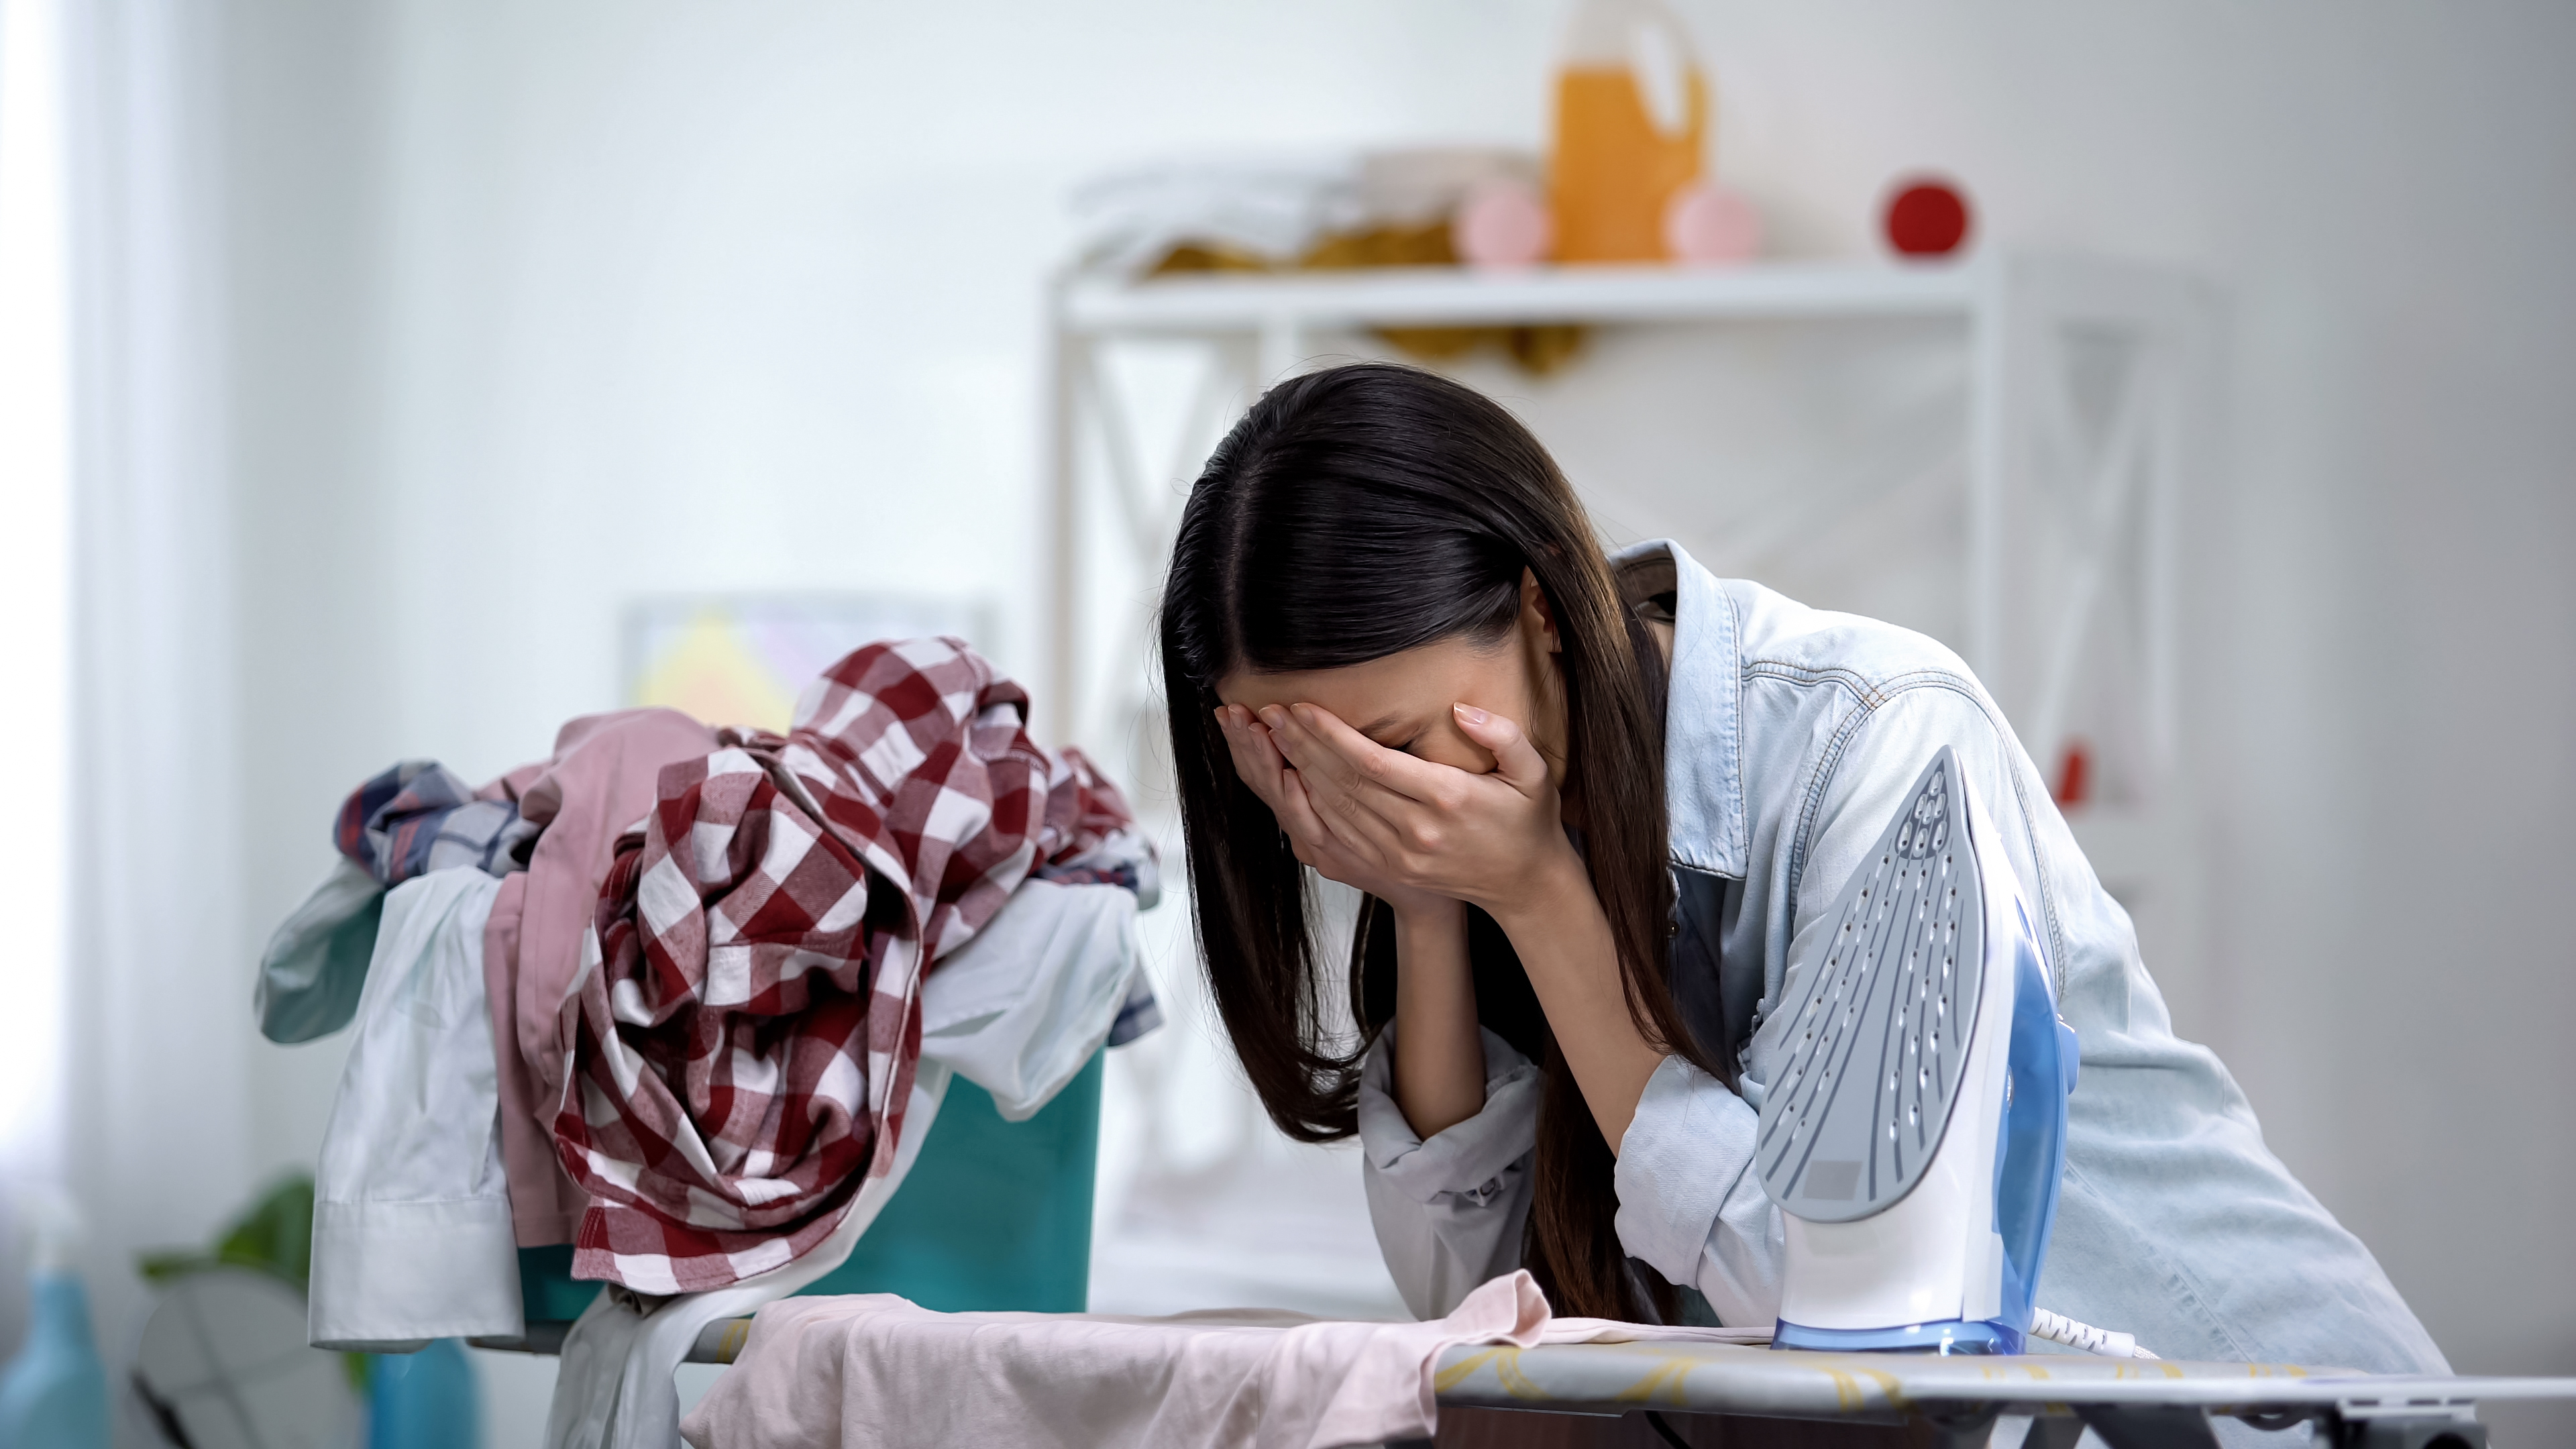 Eine gestresste Frau lehnt weinend am Bügelbrett | Quelle: Shutterstock